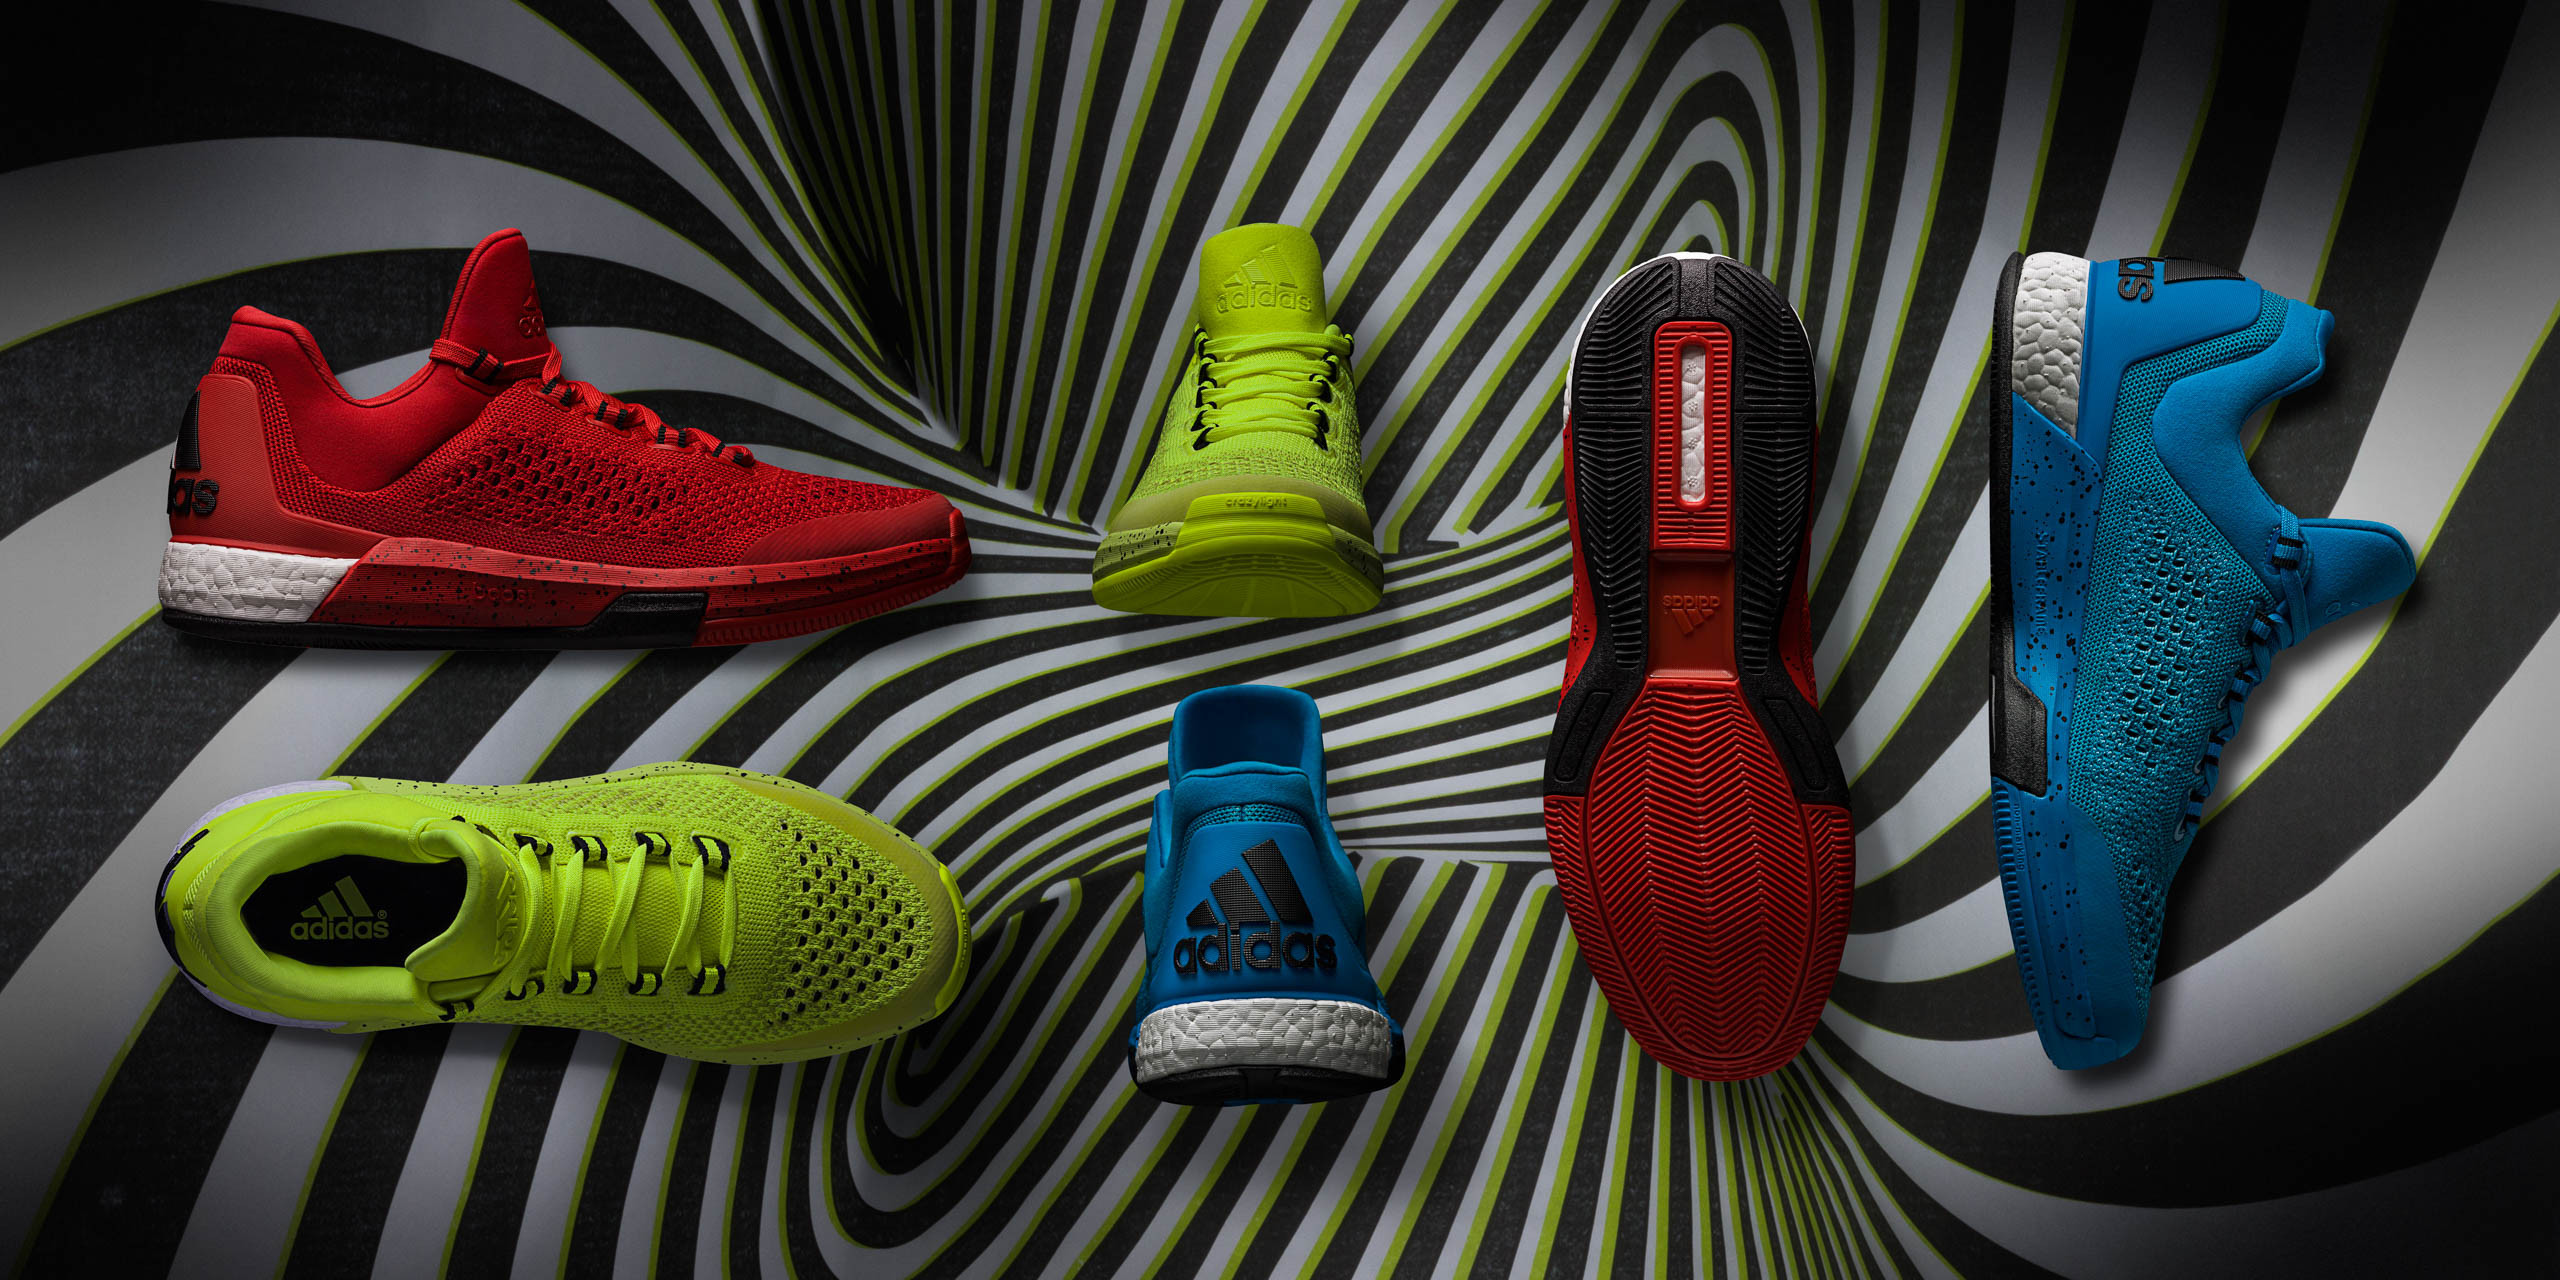 Adidas Crazylight Boost basketball footwear